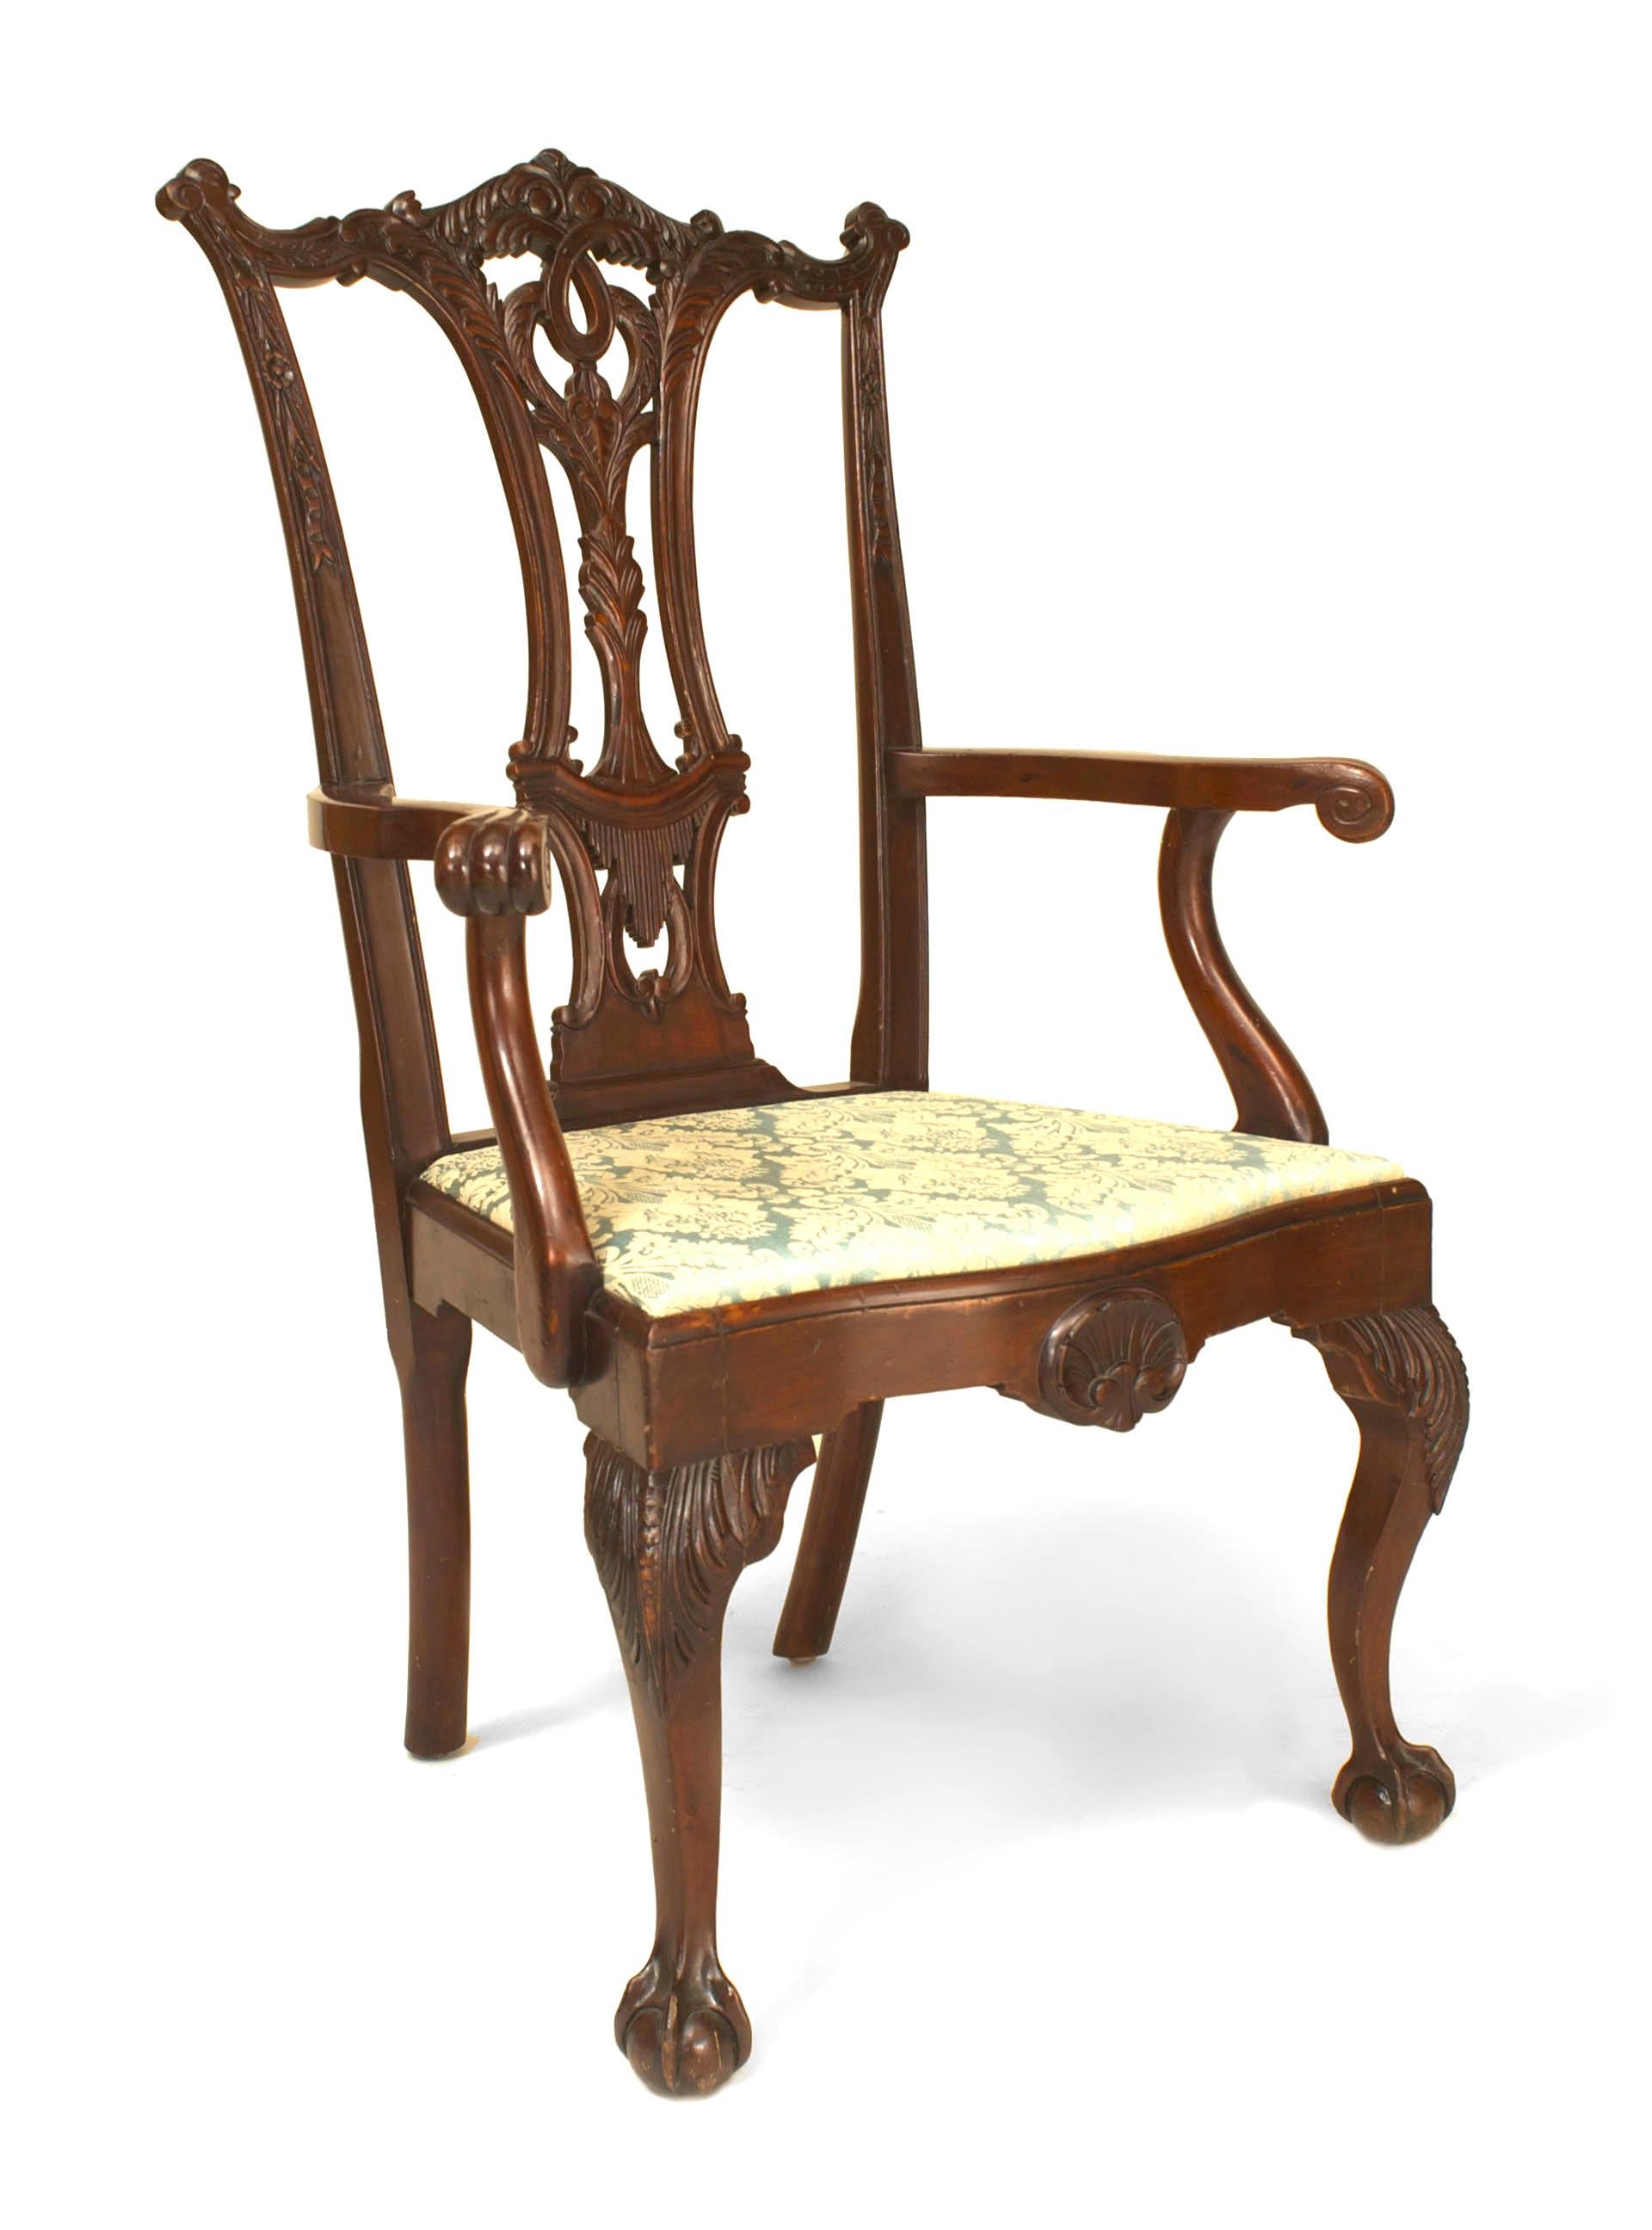 Satz von 12 geschnitzten Stühlen aus Mahagoni im englischen Chippendale-Stil (19. Jahrhundert) mit hoher Rückenlehne, Cabriole-Beinen und gepolsterten Sitzen. (10 Seitenstühle: 23 